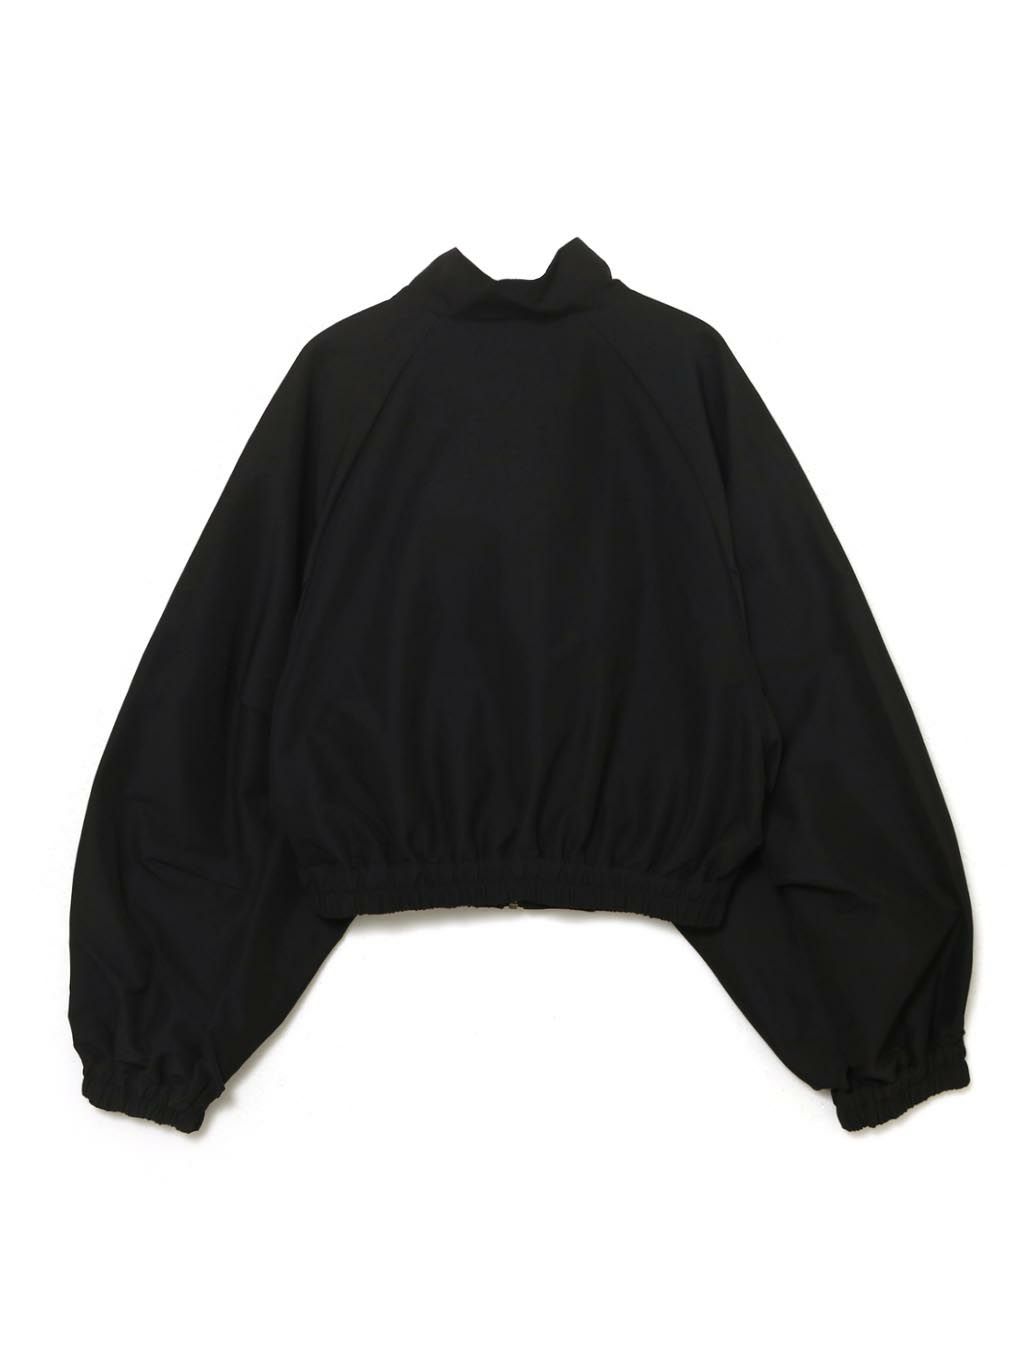 8,199円melt the lady メルトザレディ gothic jacket